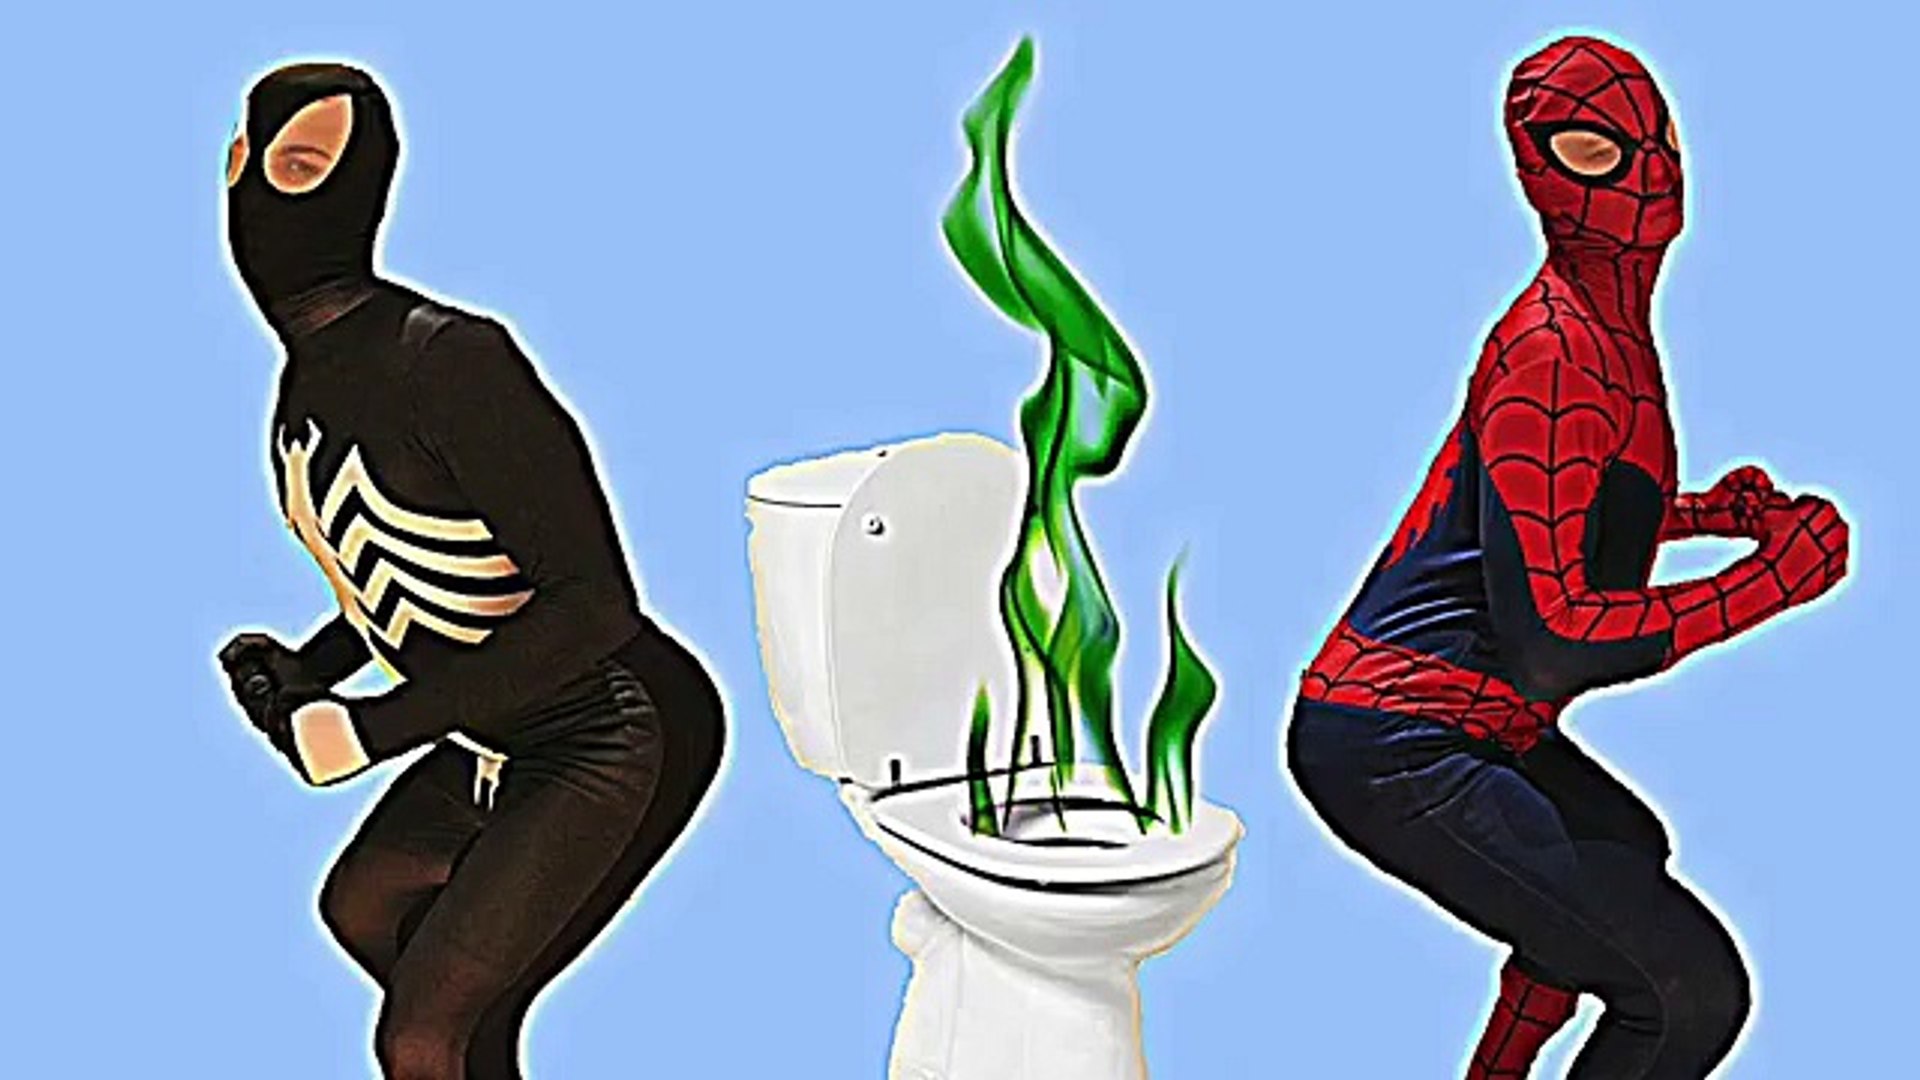 Spiderman VS Negro de Spiderman Caca de Broma!! | PEDO batalla Aceptado |  Películas de Superhéroes en rea - Dailymotion Video